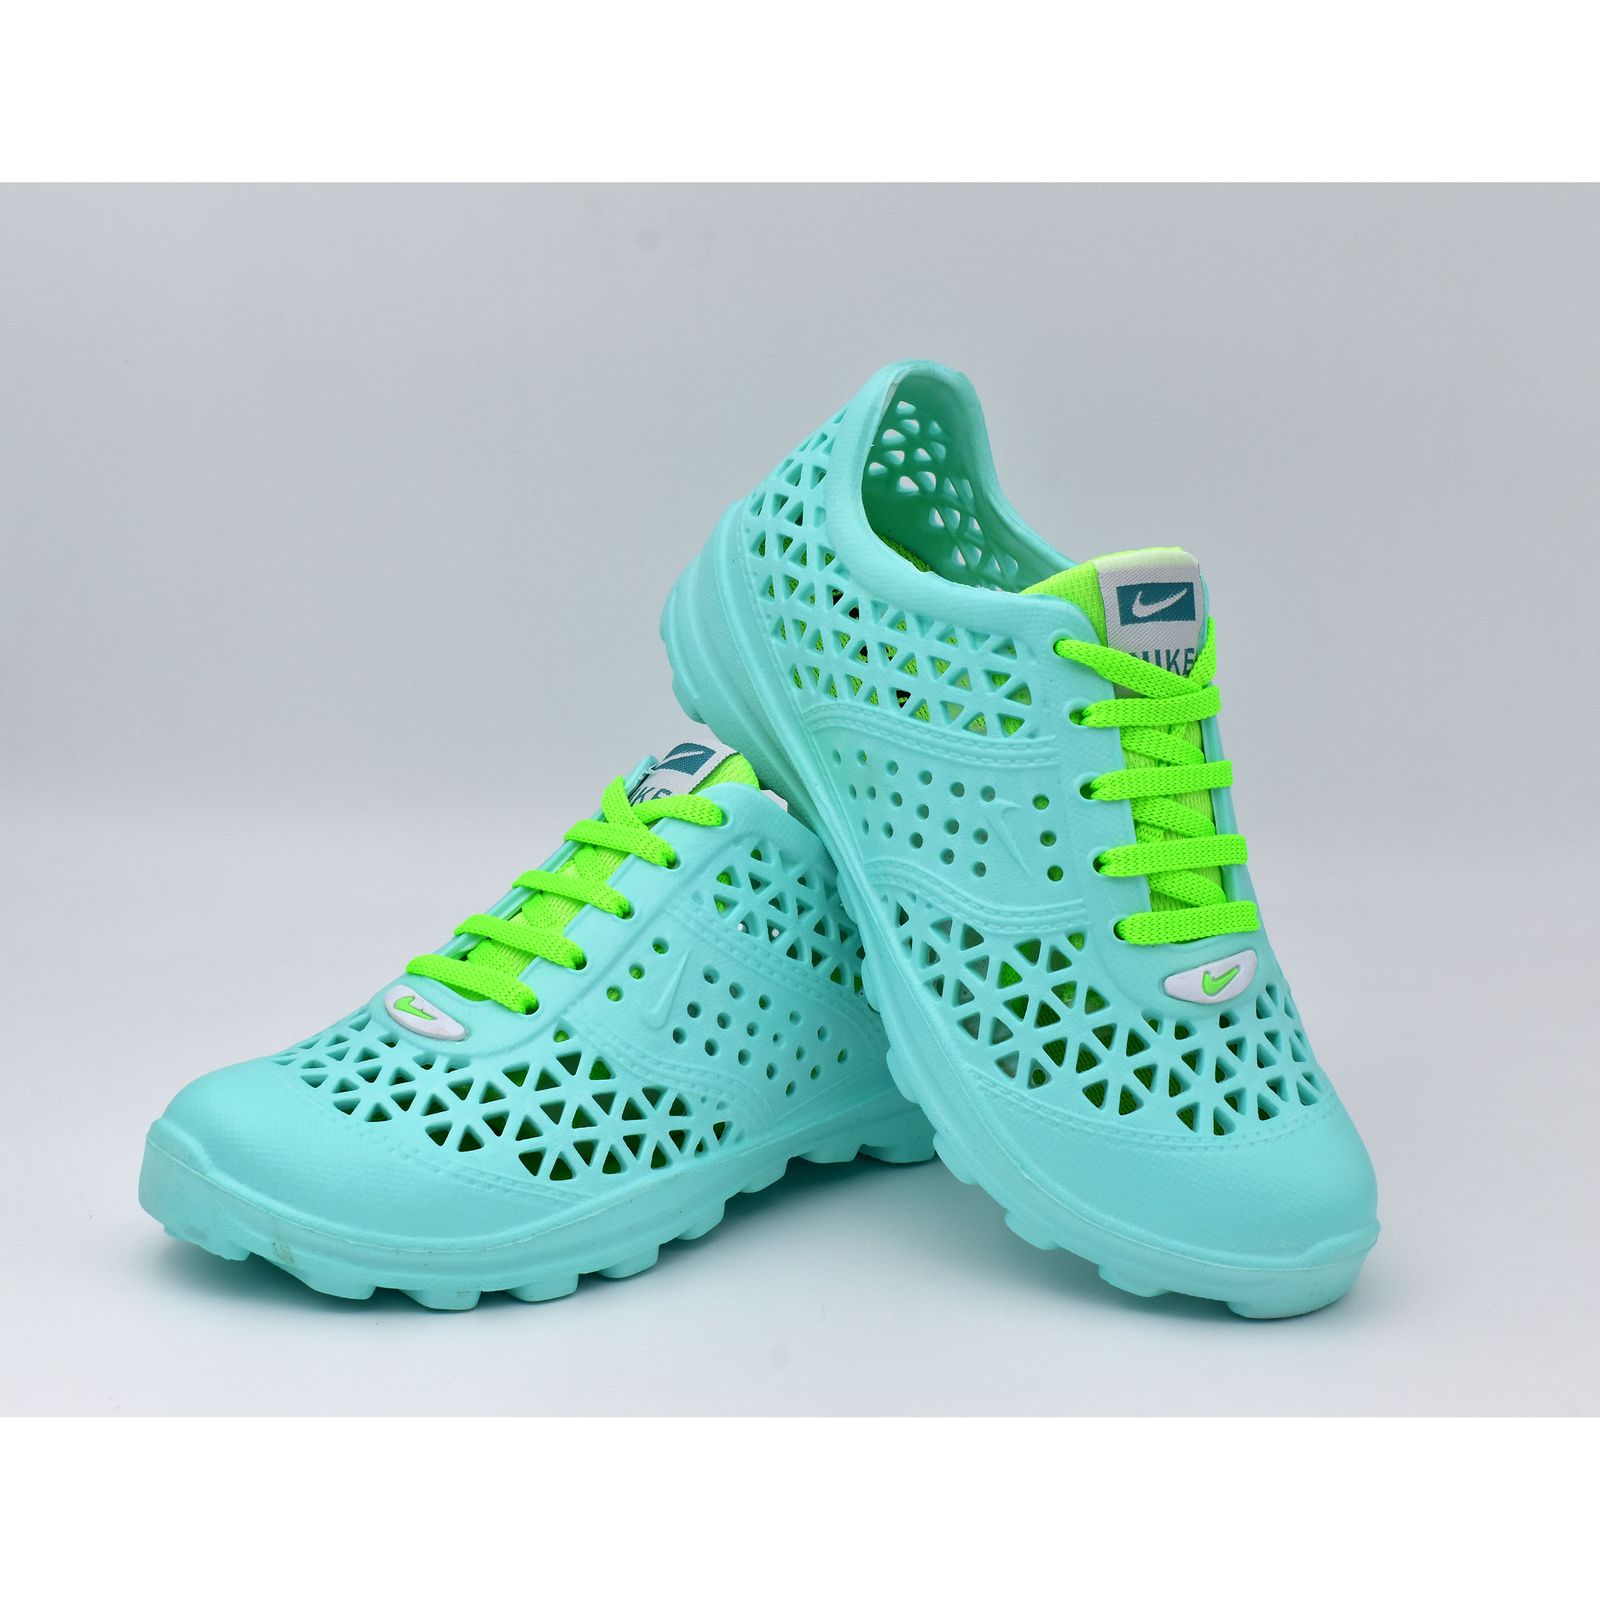  کفش ورزش های آبی زنانه نسیم مدل مرجان کد 8714 -  - 4